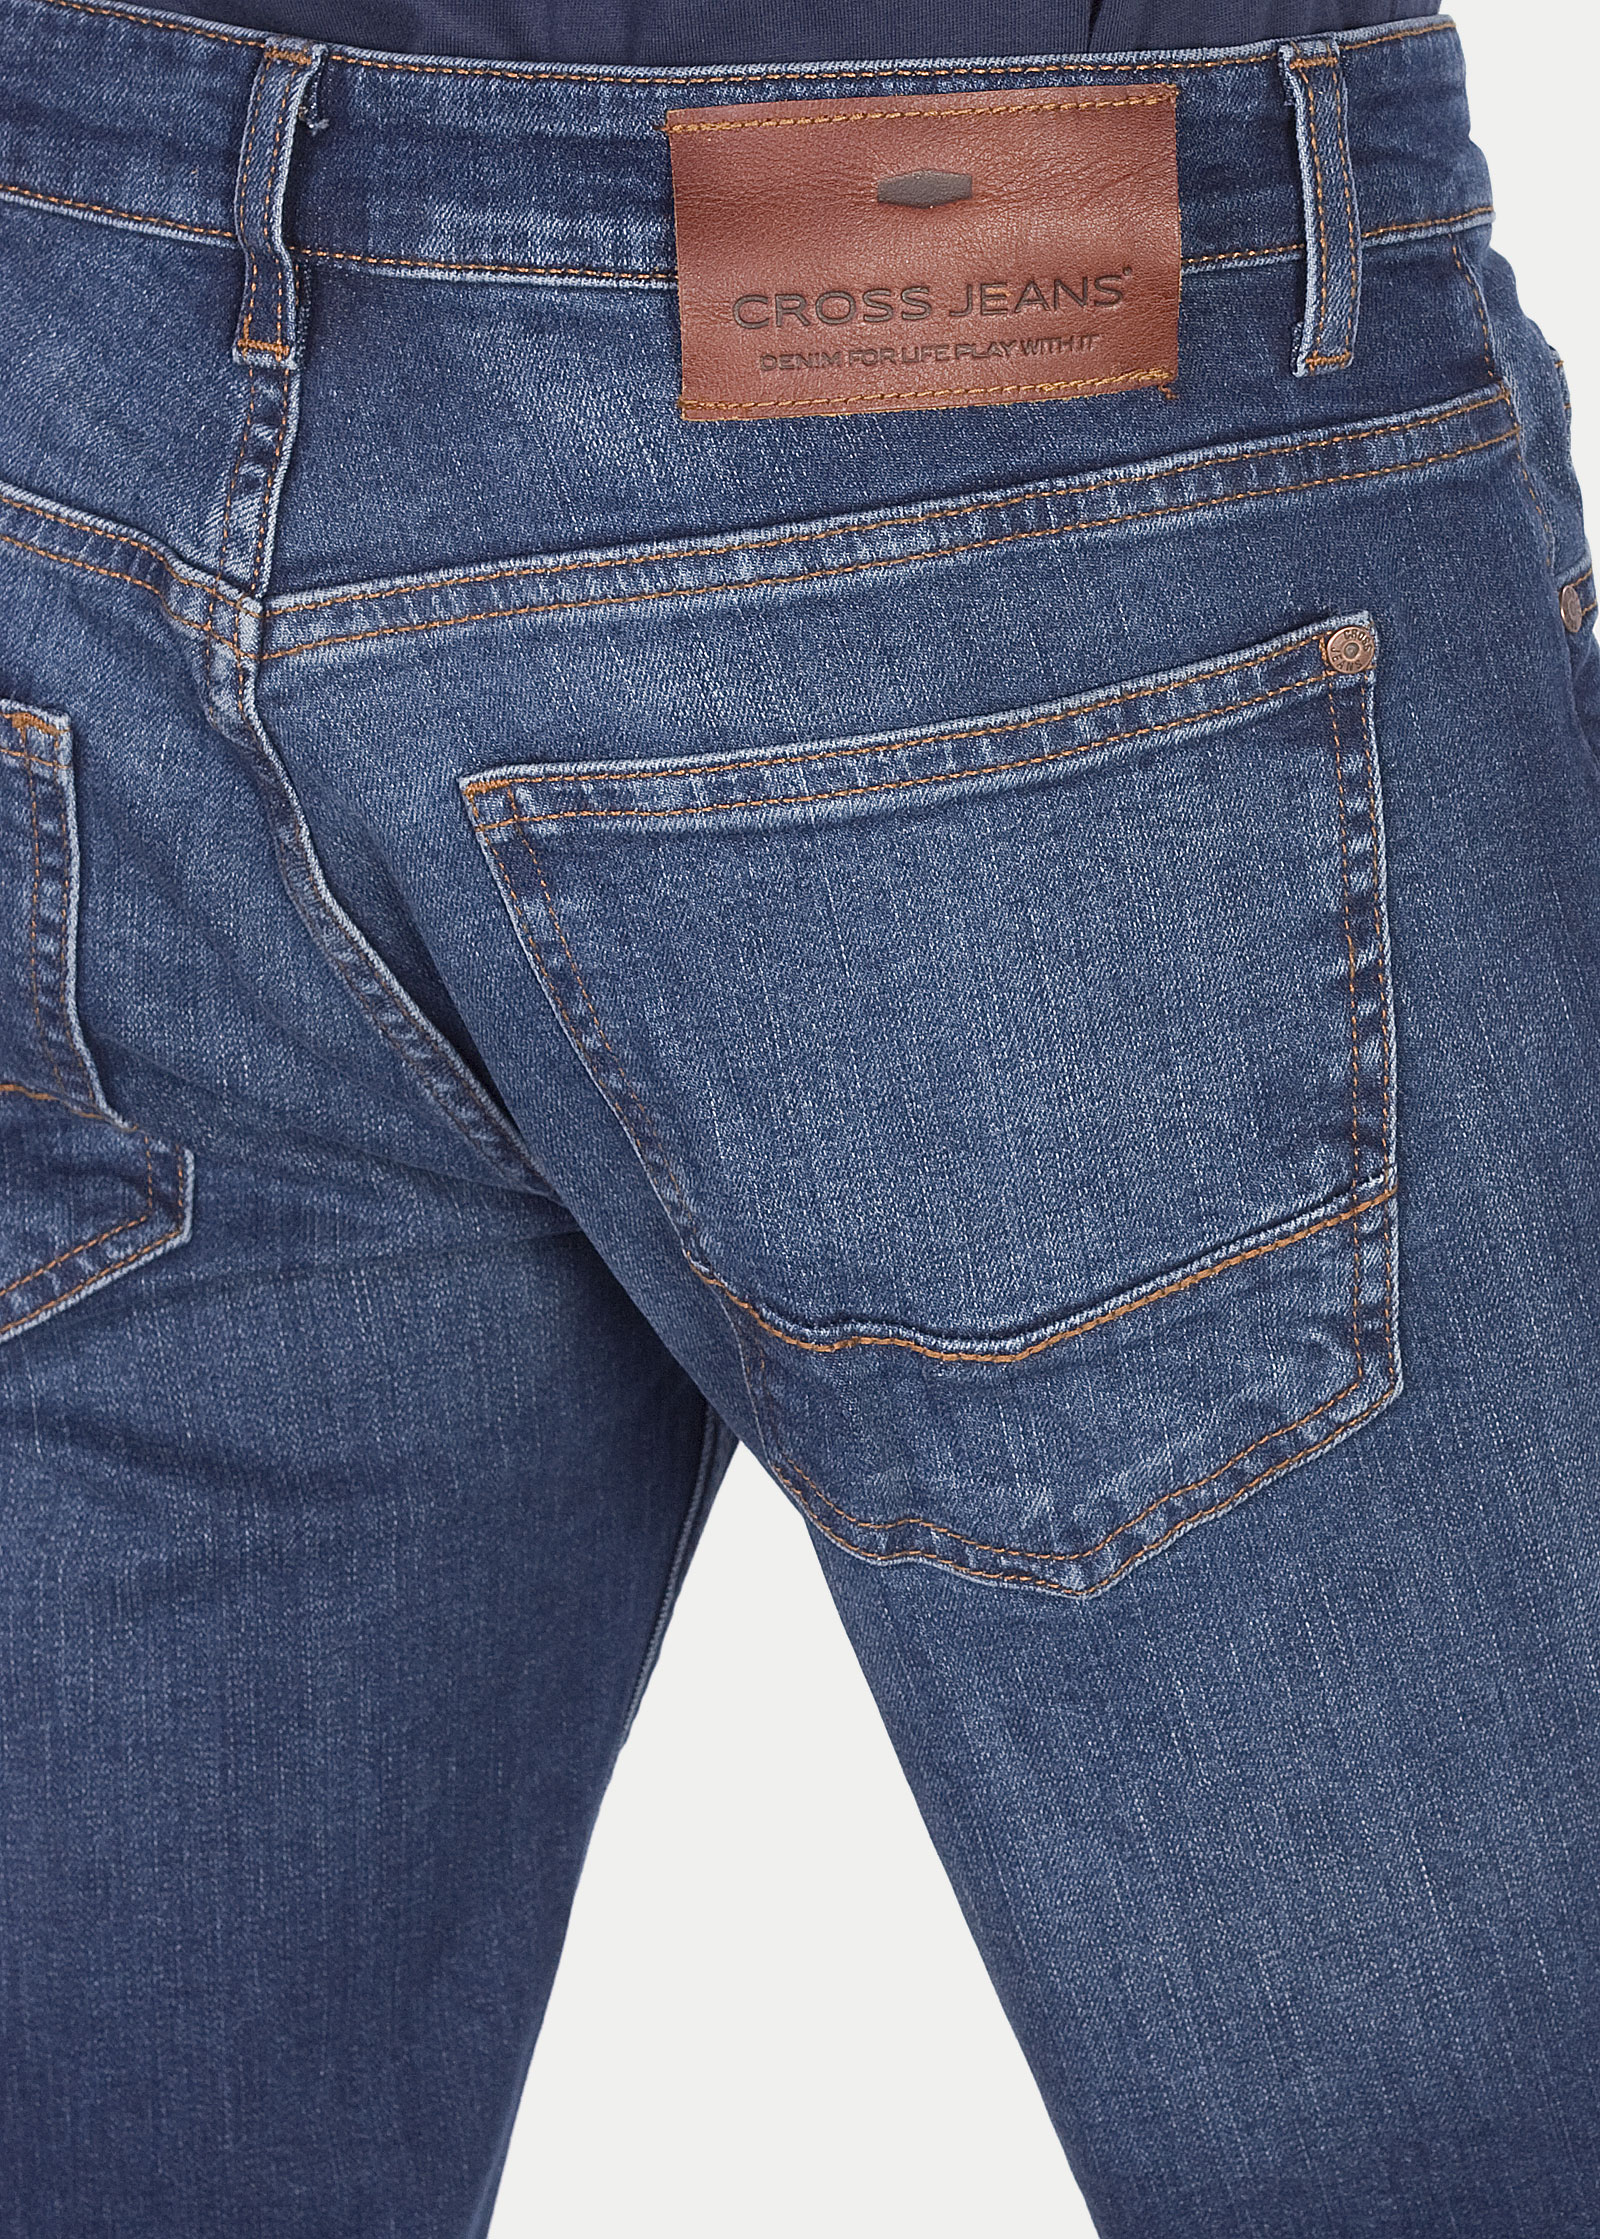 Men's Jeans Cross® Jeans Brad - Dark Blue (F 193-121) - Jeans24h ...